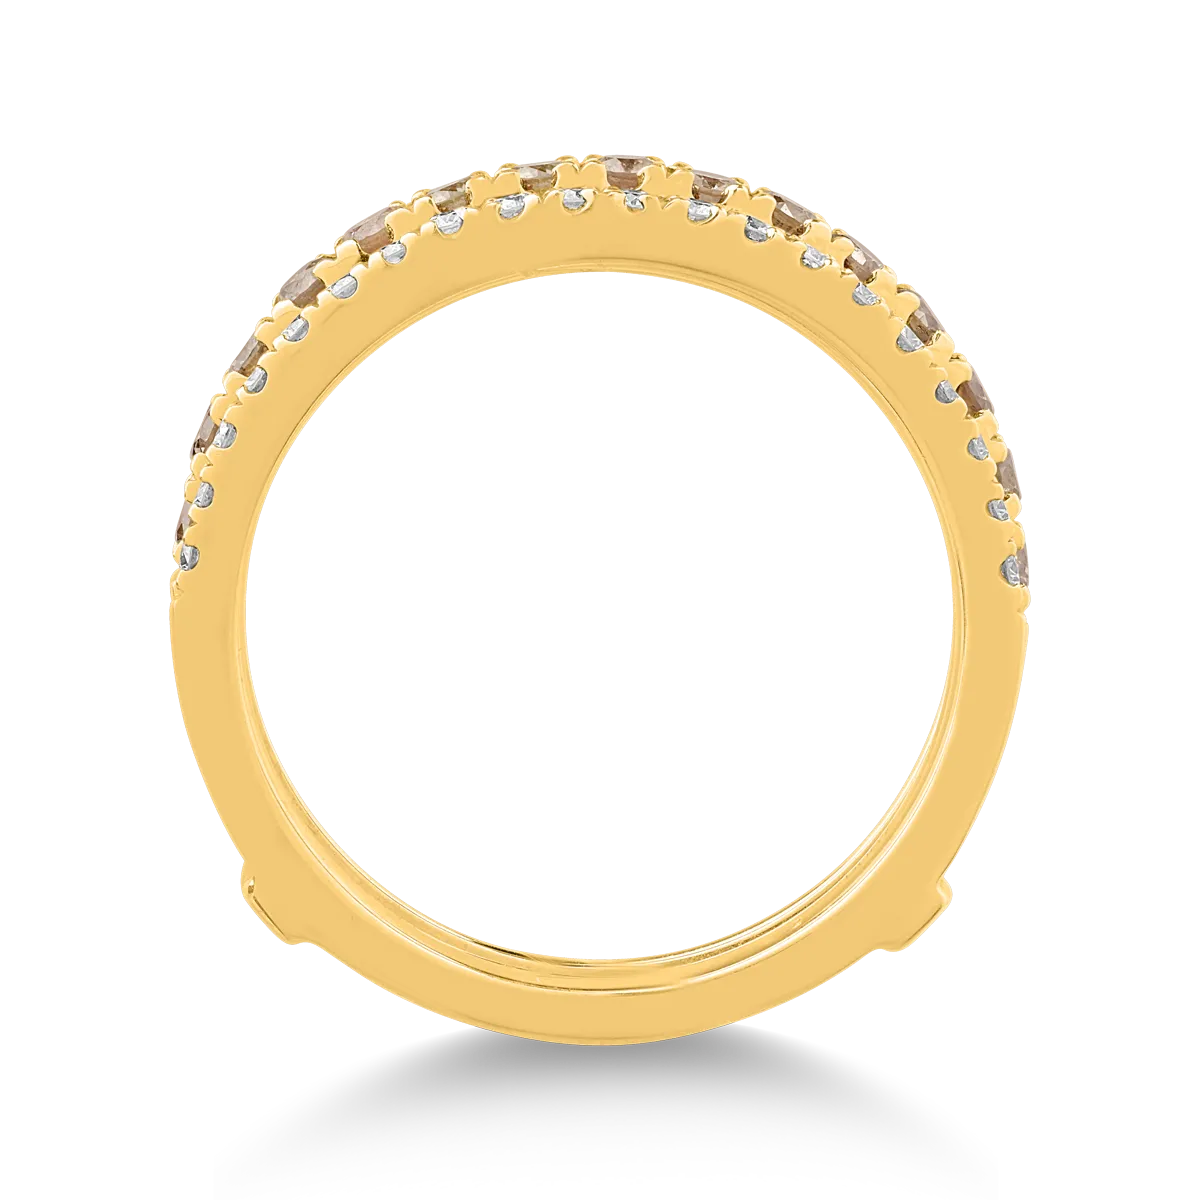 Inel din aur galben de 18K cu diamante maro de 0.33ct si diamante transparente de 0.34ct